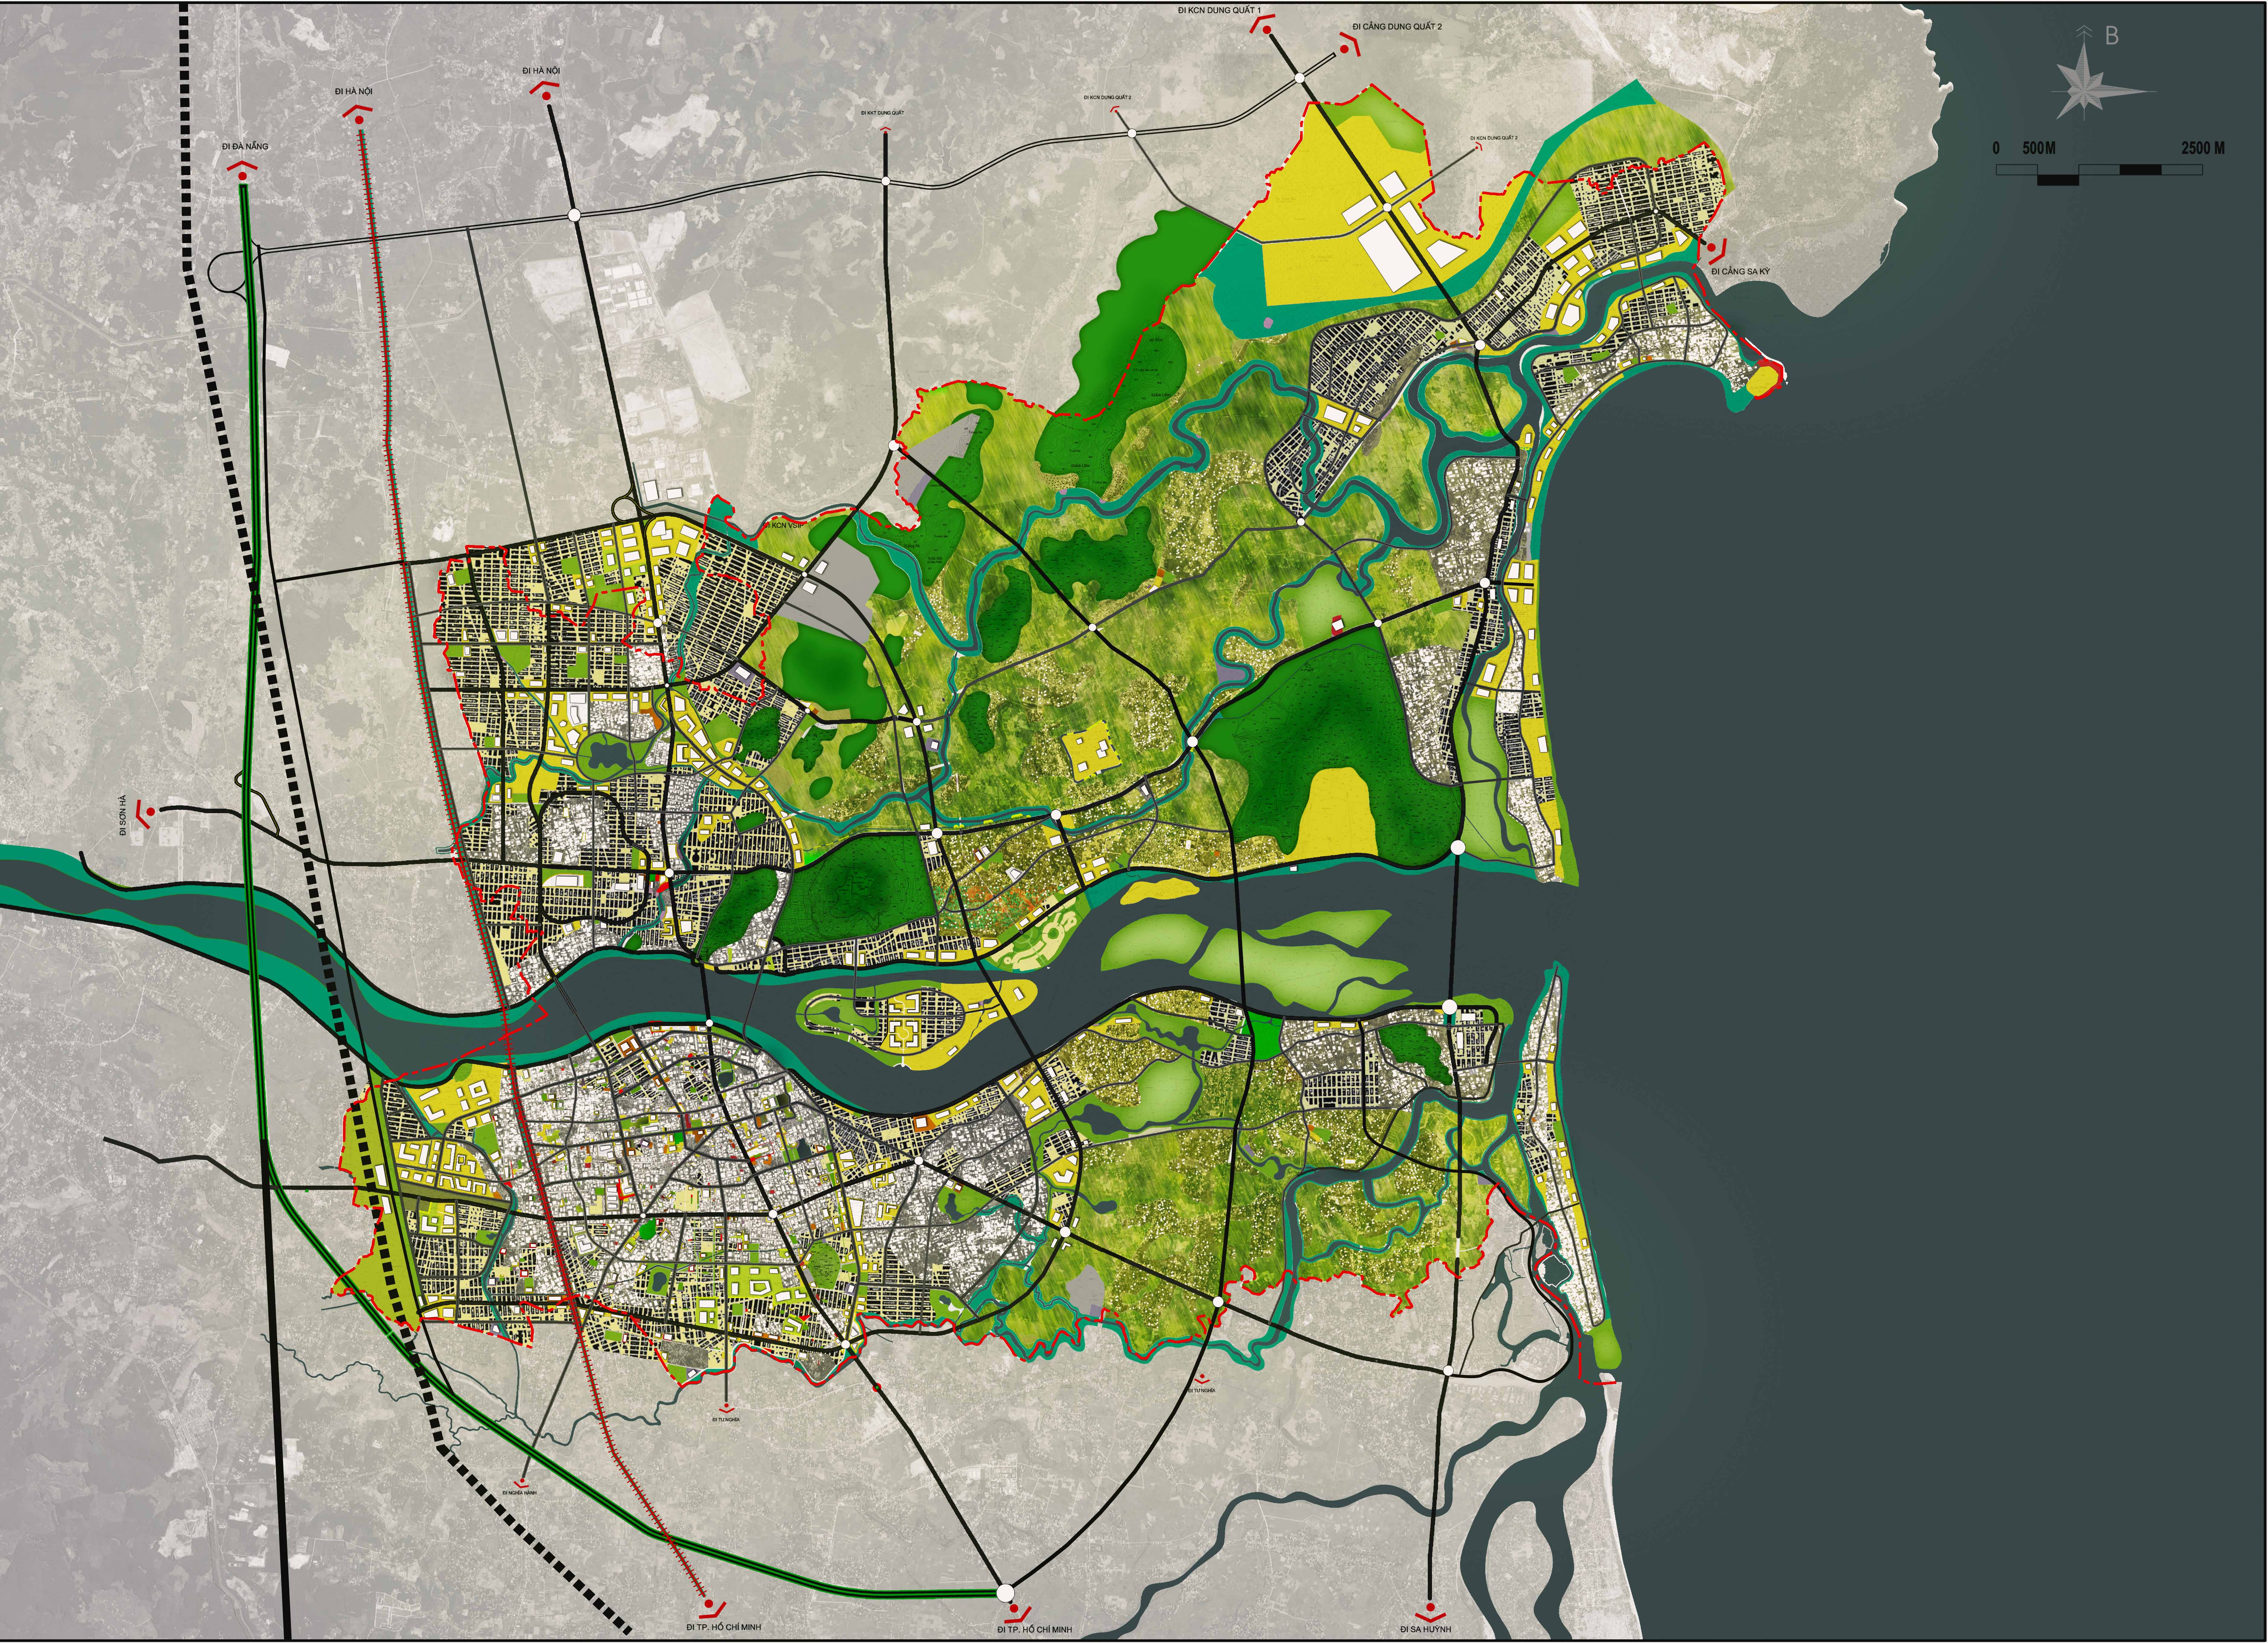 Bản đồ quy hoạch chung xây dựng thành phố Quảng Ngãi mới nhất đã được cập nhật đến năm 2024! Với những kế hoạch và dự án mới, thành phố sẽ tiếp tục phát triển với tốc độ nhanh chóng trong tương lai.